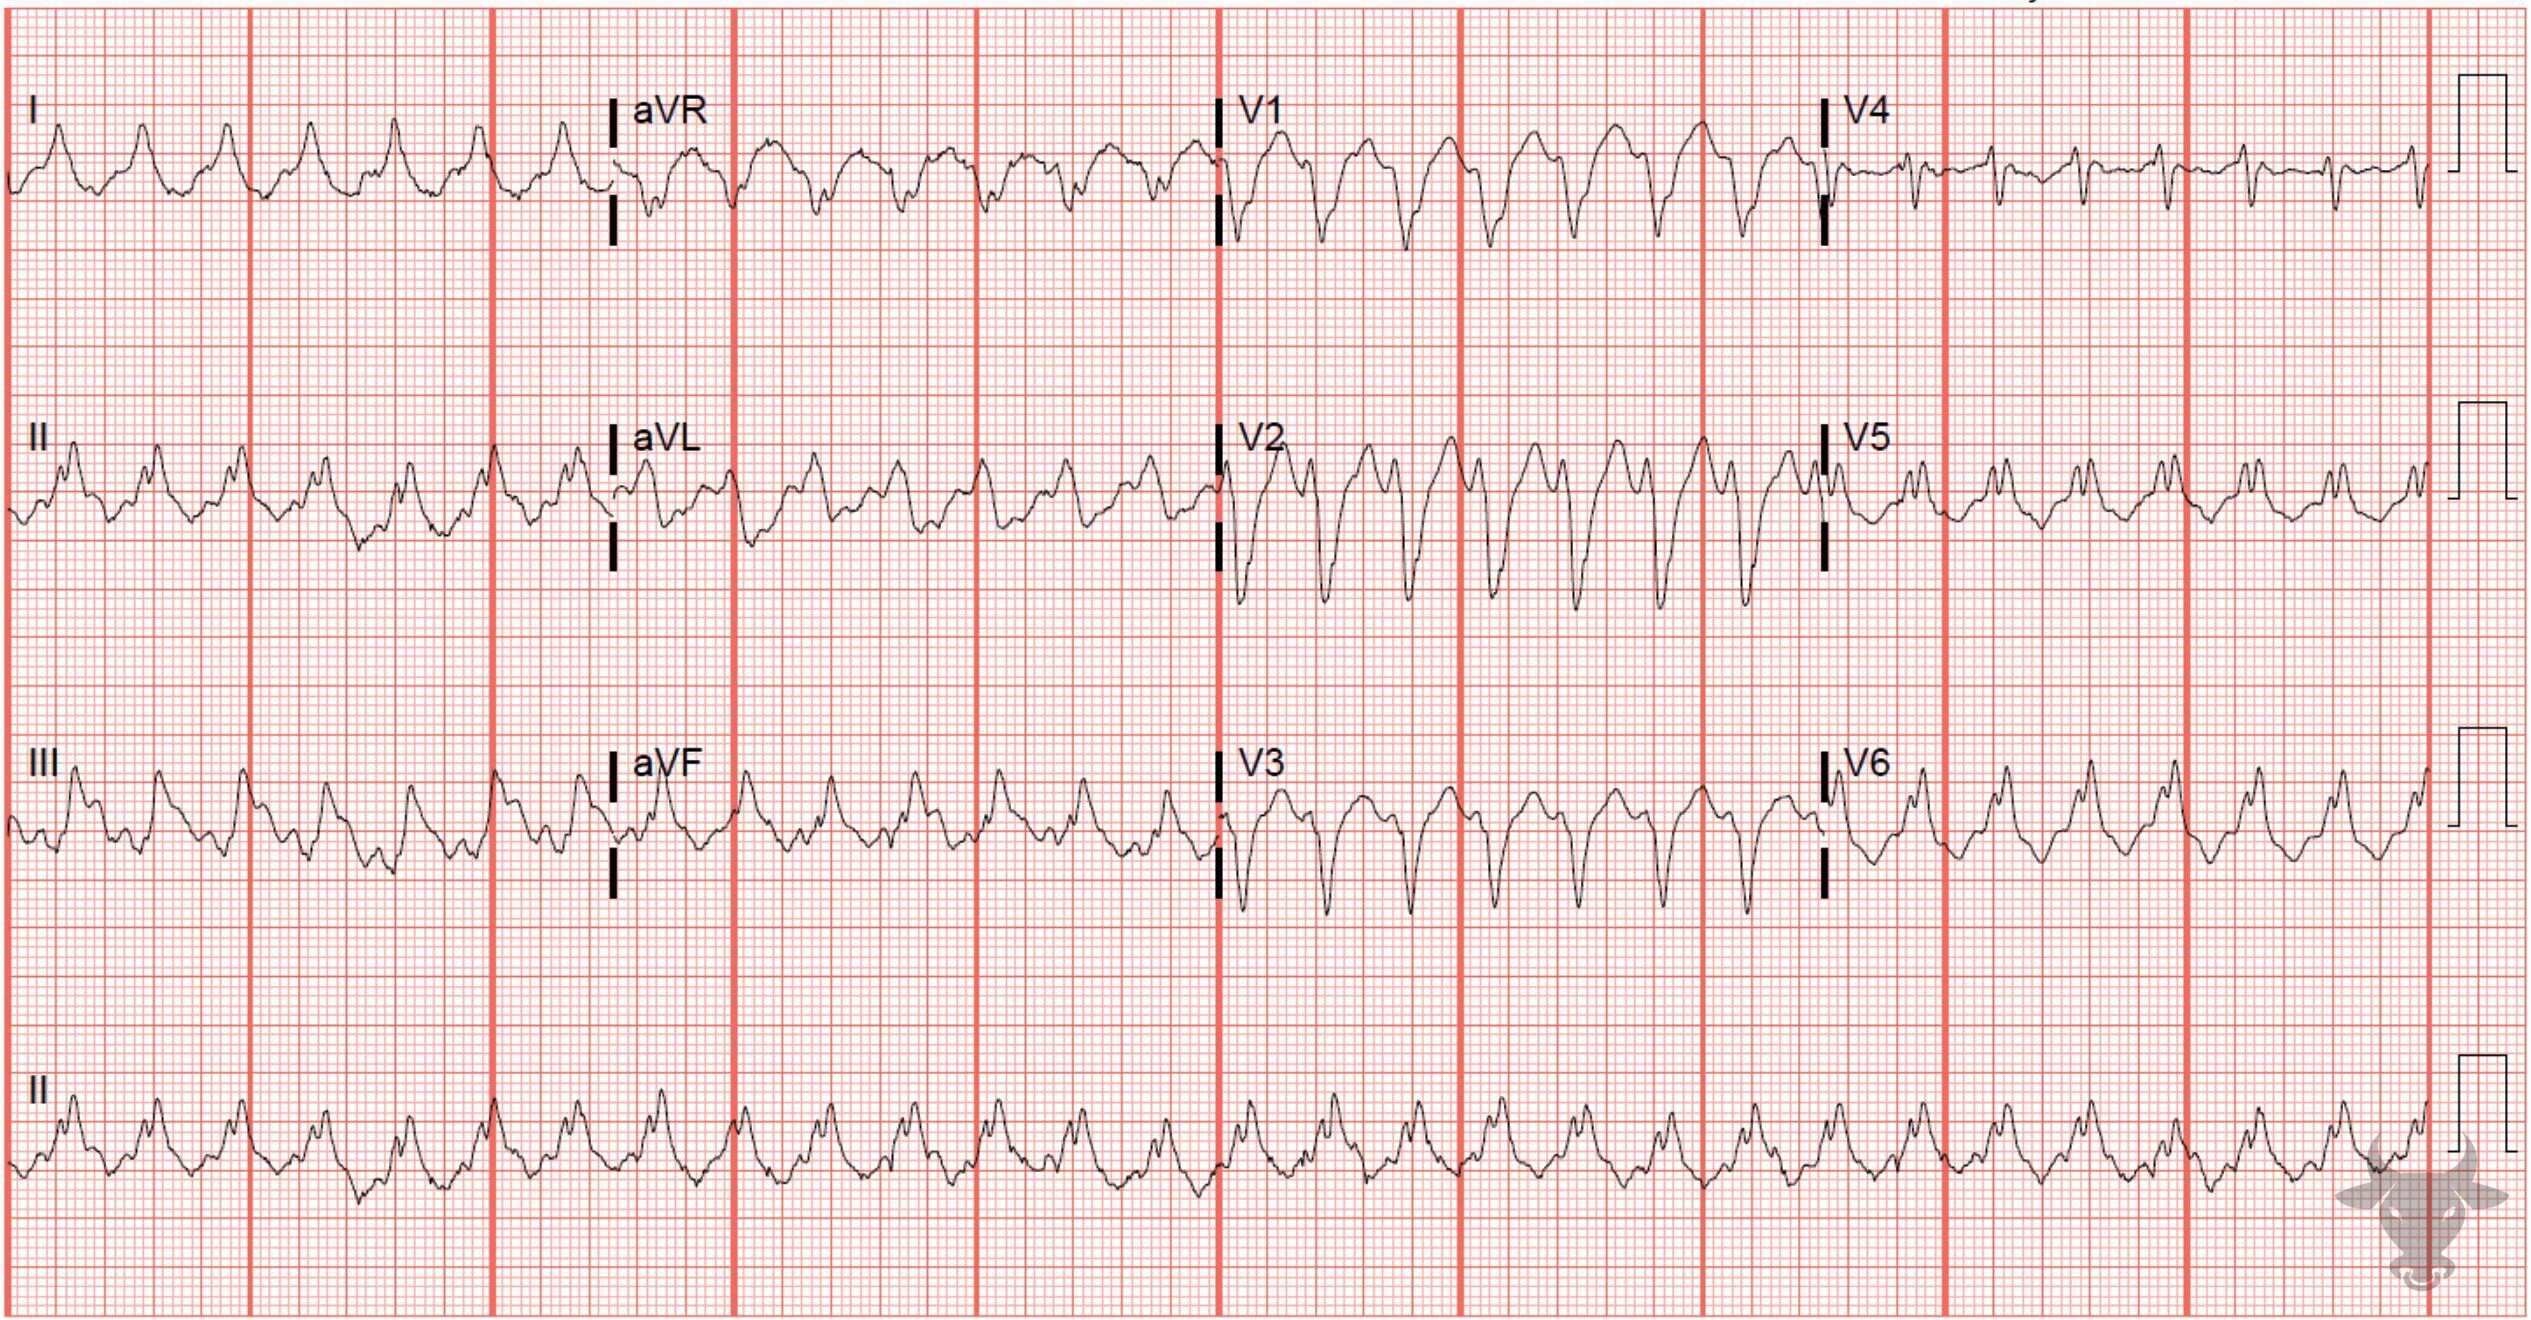 ECG Showing Ventricular Tachycardia